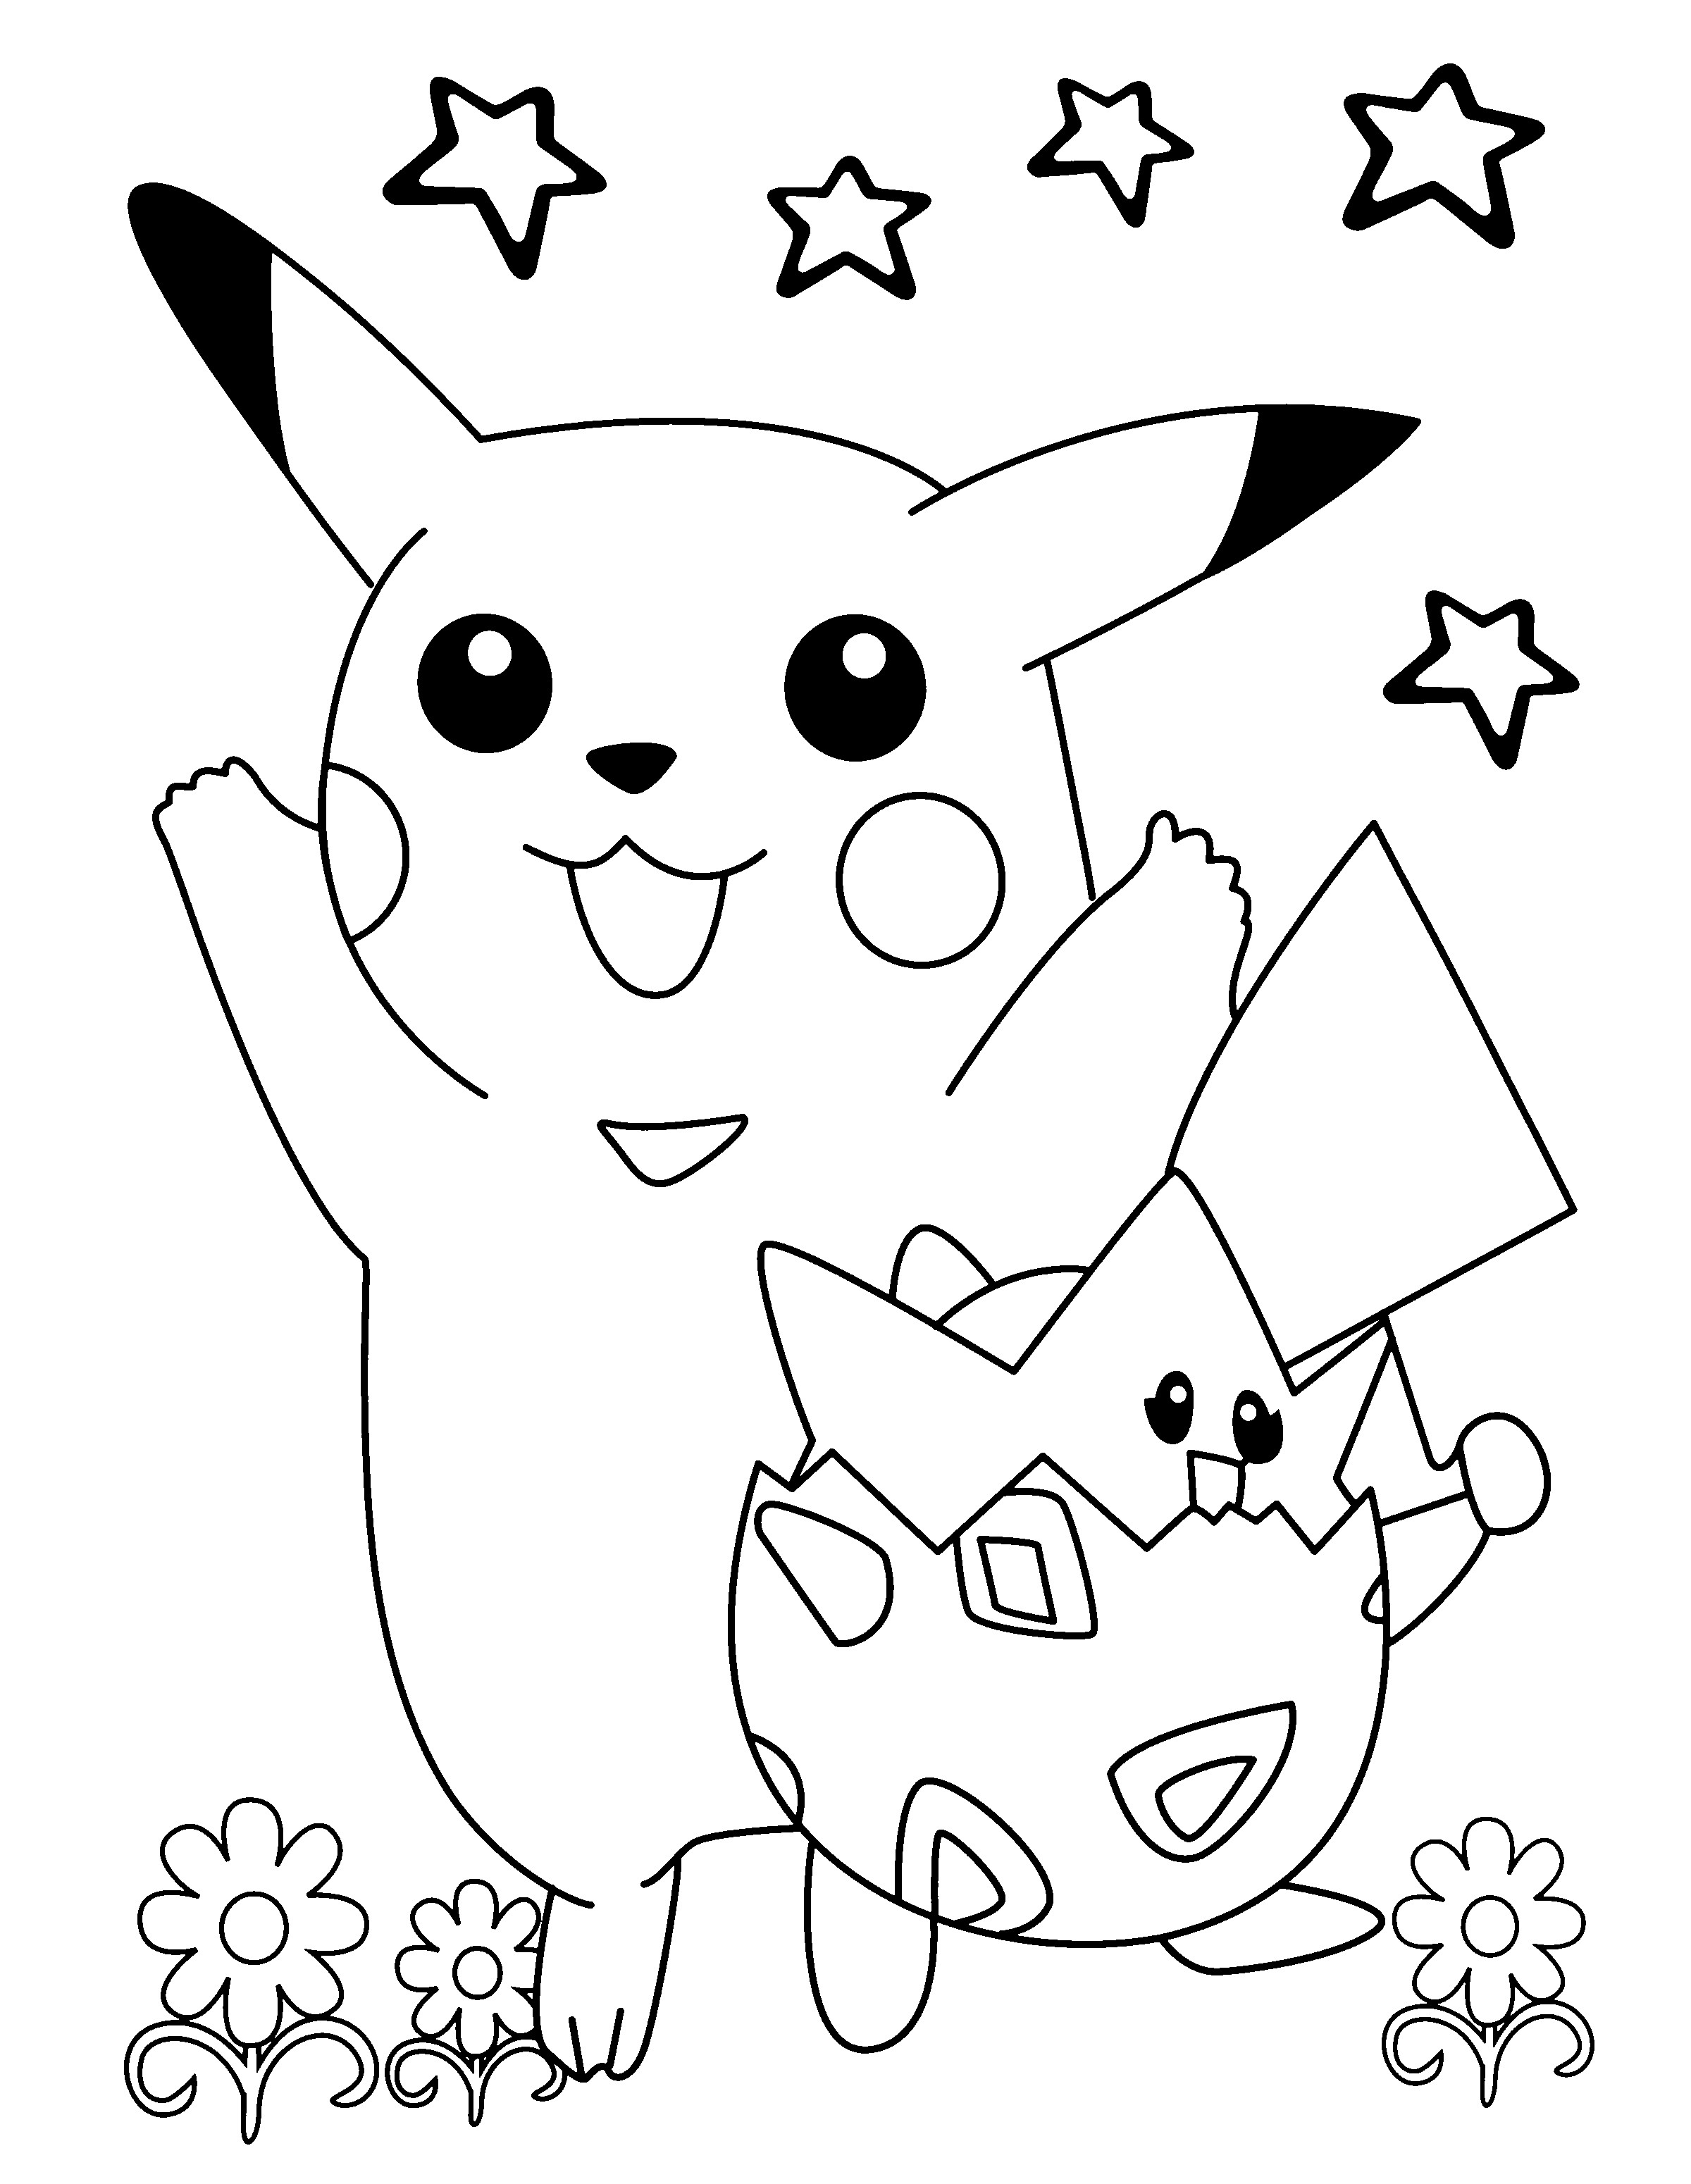 42+ Pikachu bilder zum ausmalen , Pokemon Ausmalbilder Pikachu Vorlagen zum Ausmalen gratis ausdrucken